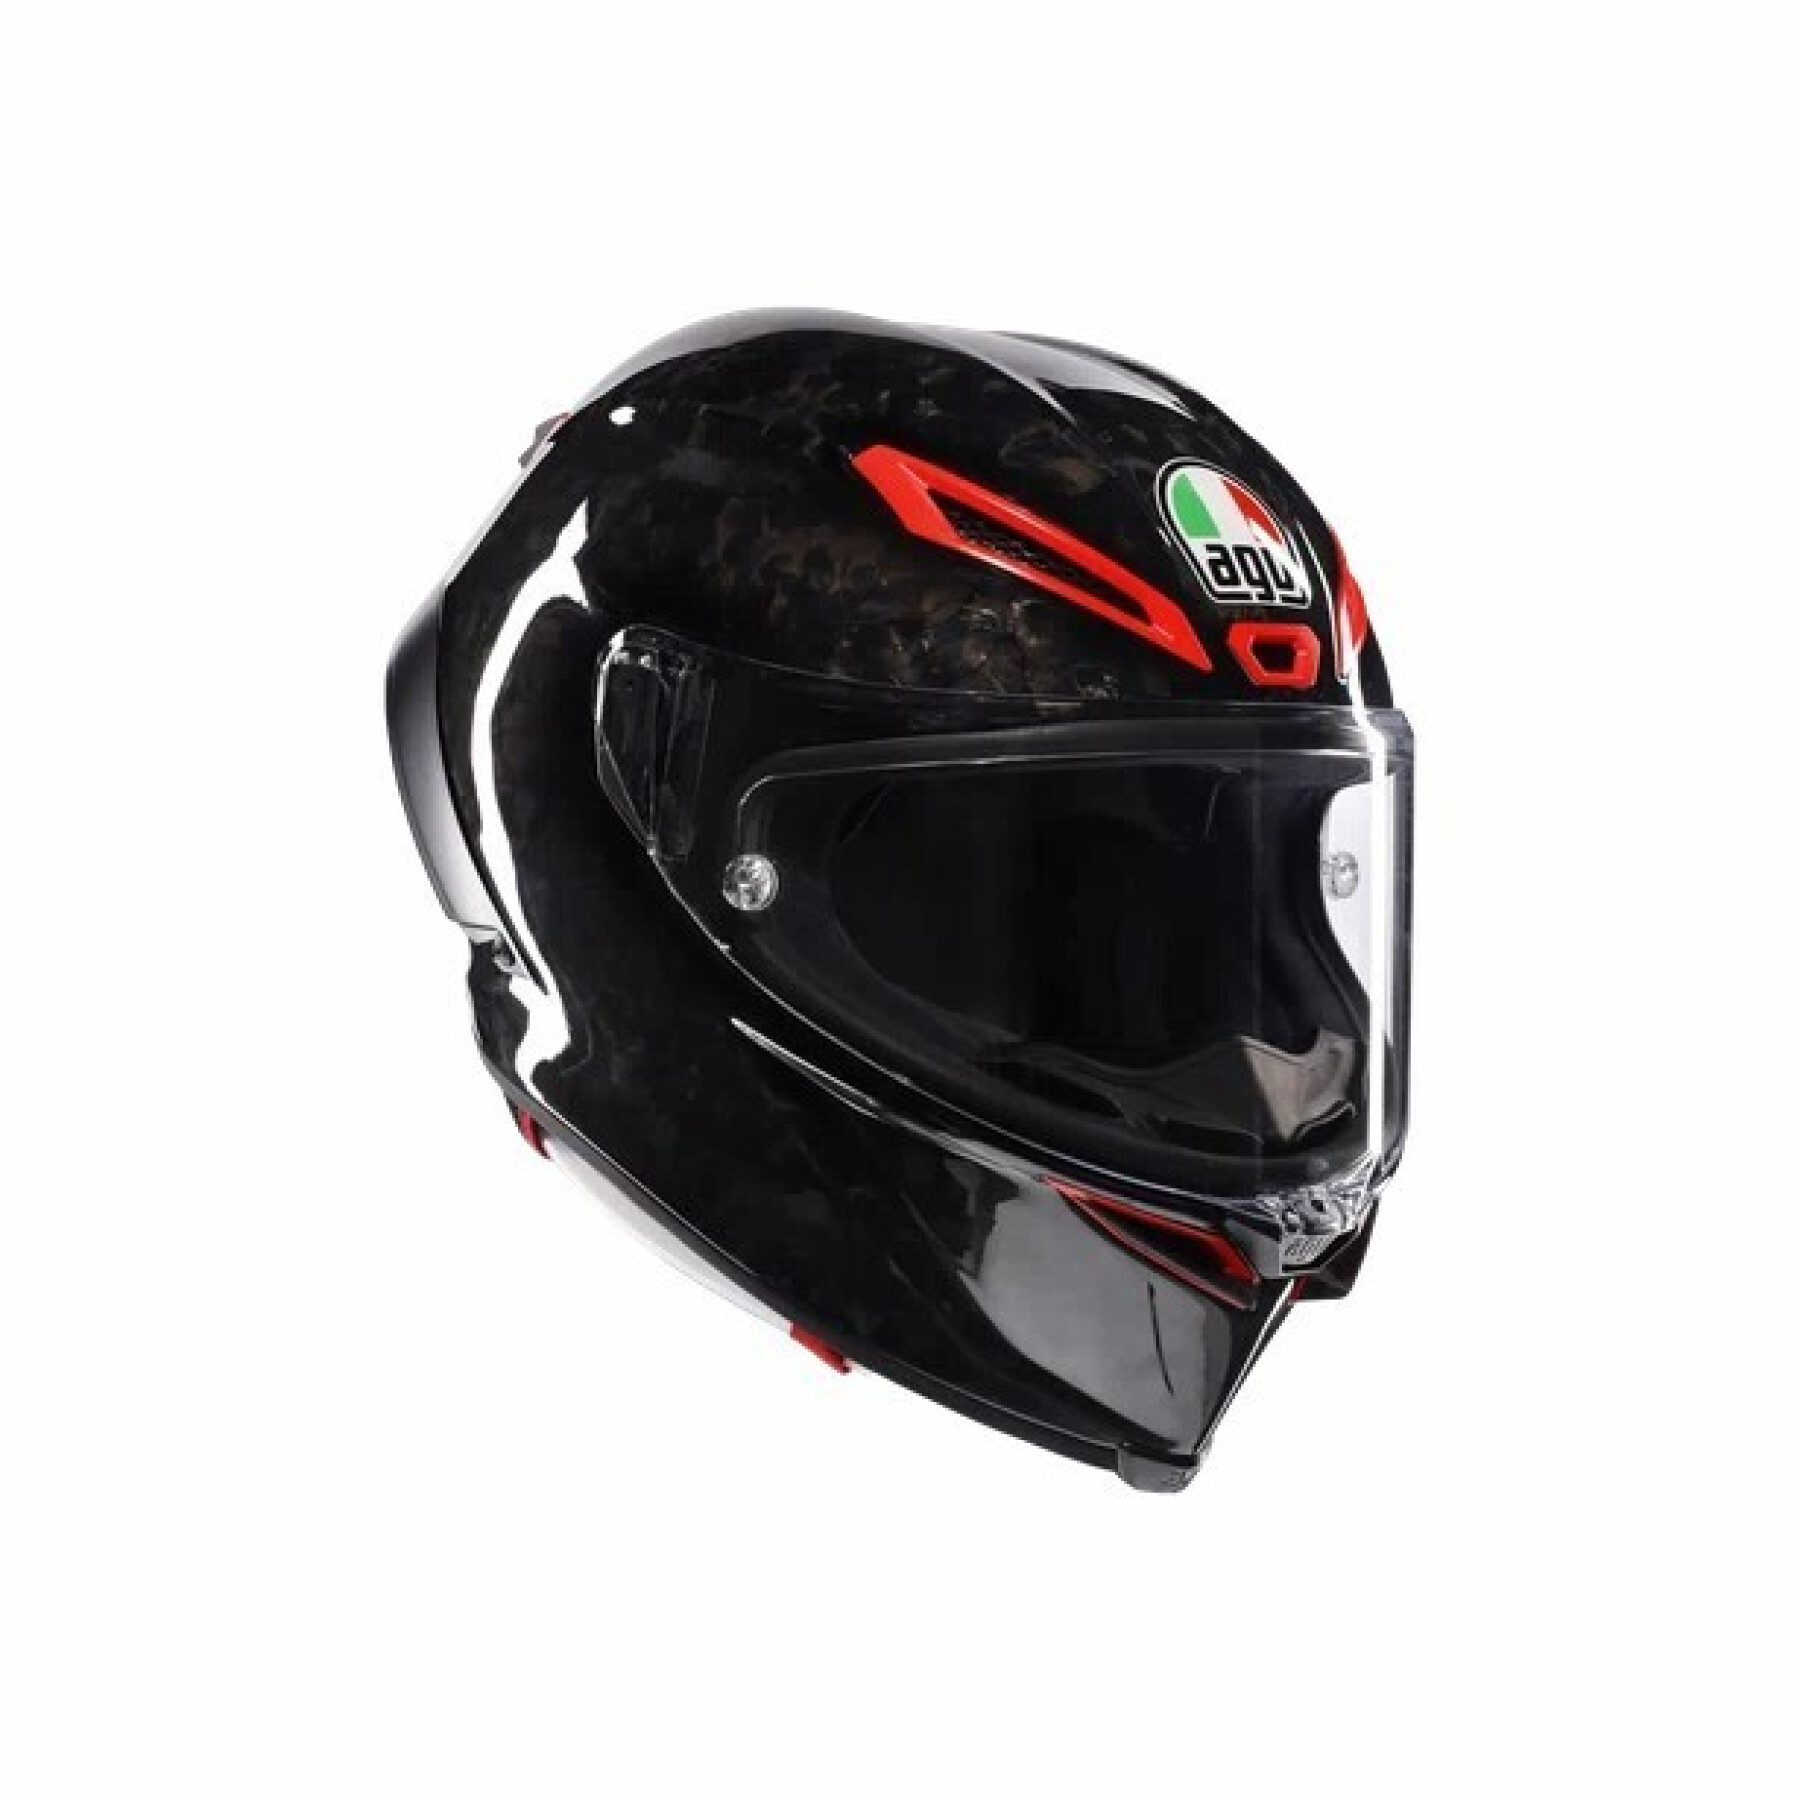 Full face motorcycle helmet AGV Pista GP RR Italia Carbonio Forgiato